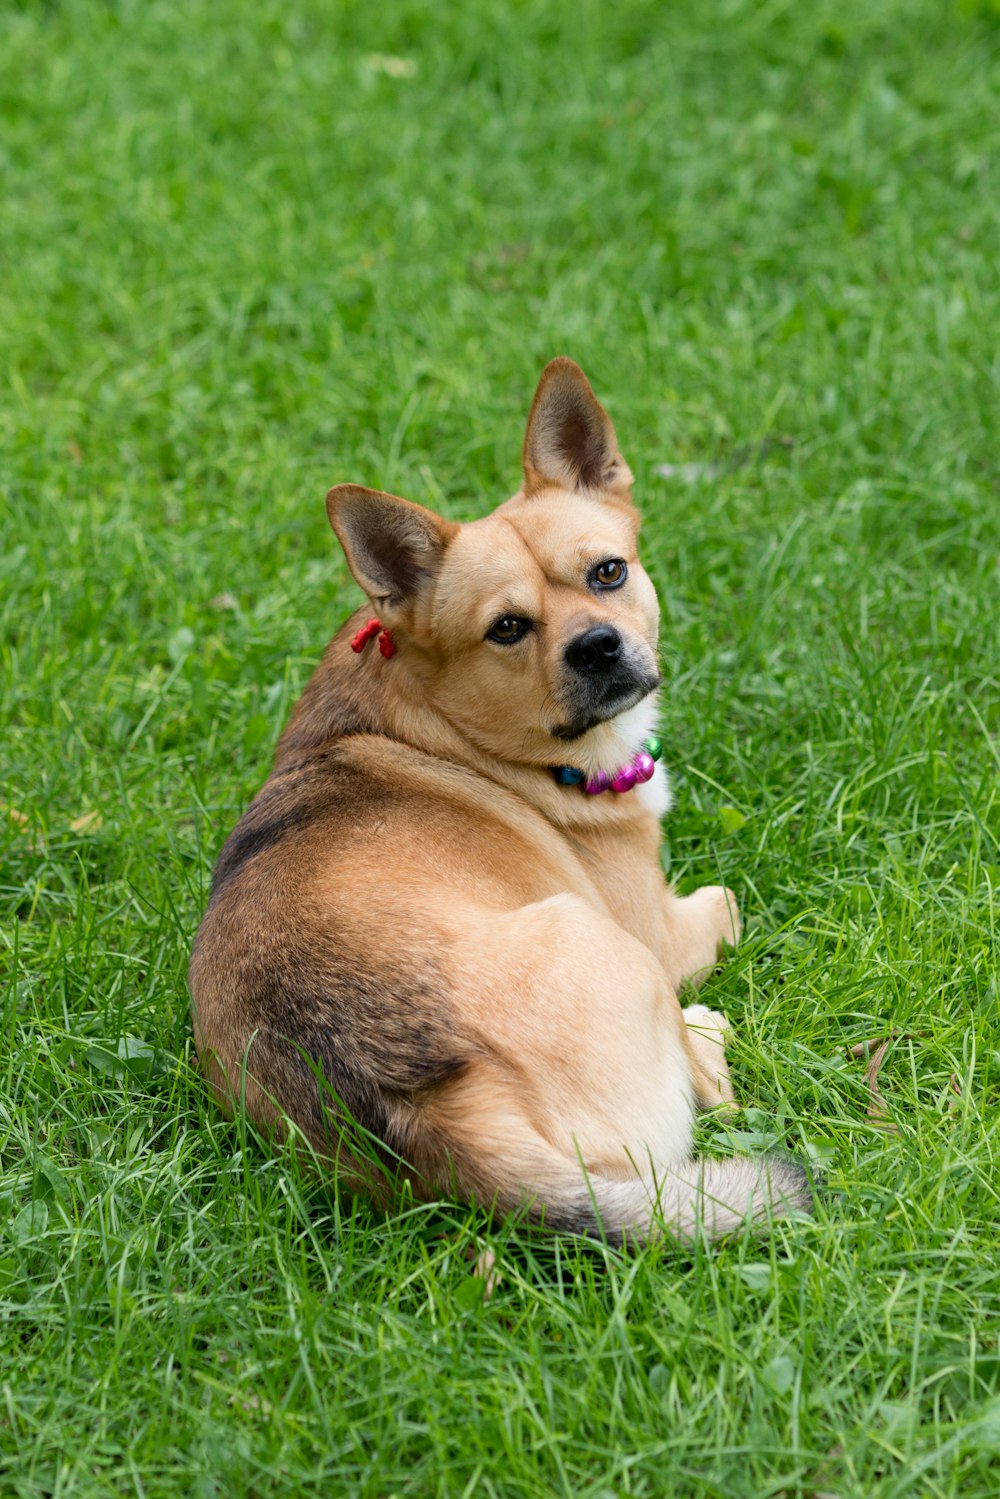 brauner und weißer kurzhaariger Hund, der tagsüber auf grünem Gras liegt